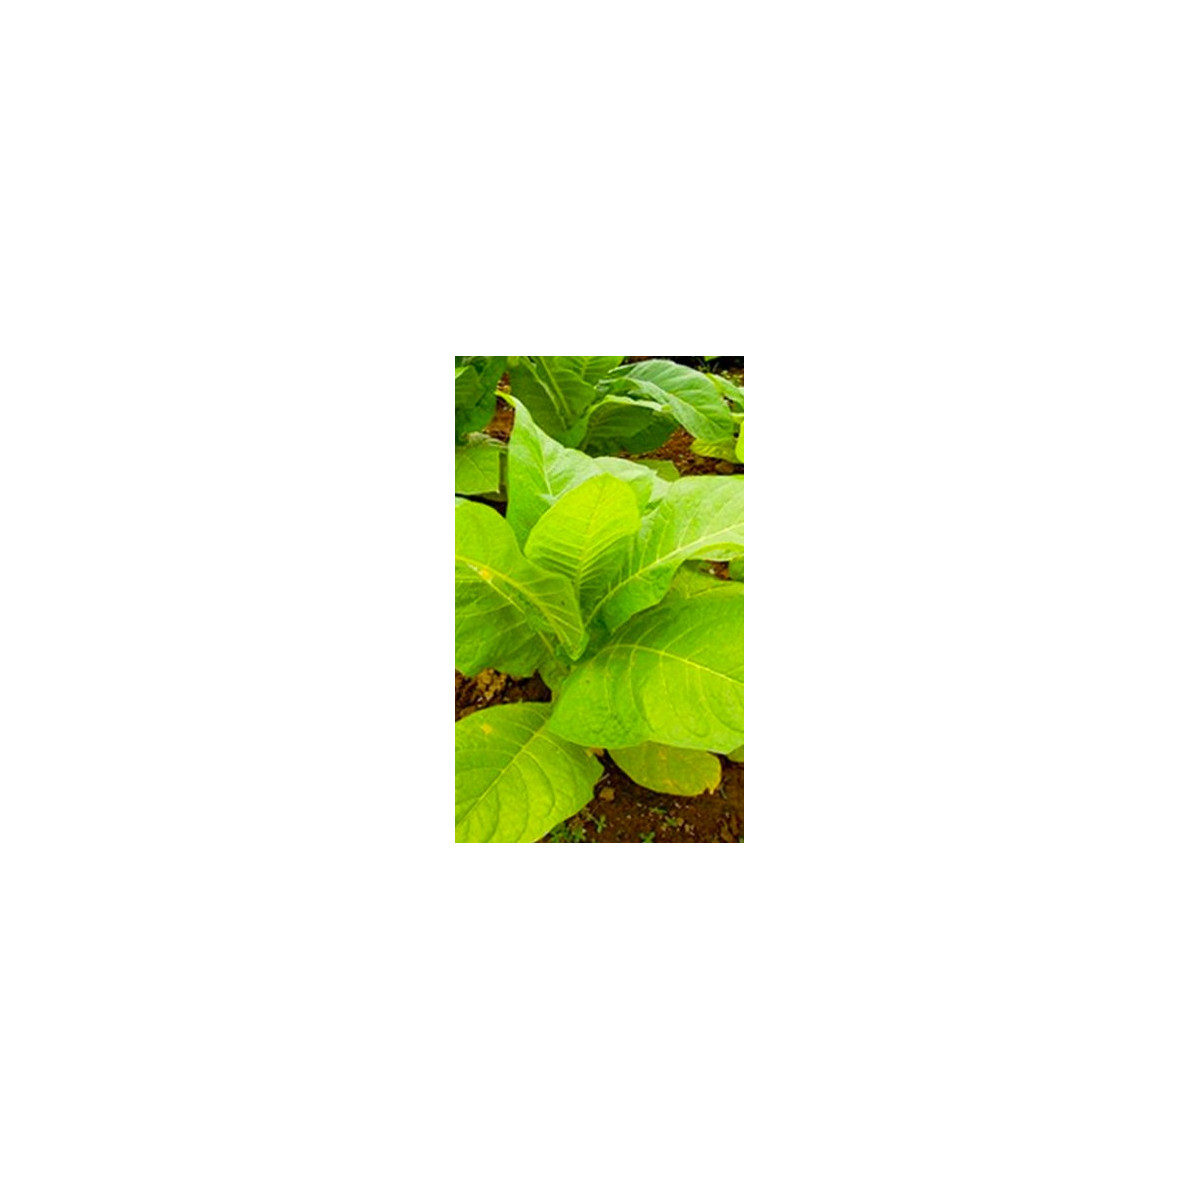 Tabák Madole SPECIÁL - semena Tabáku - Nicotiana tabacum - 20 